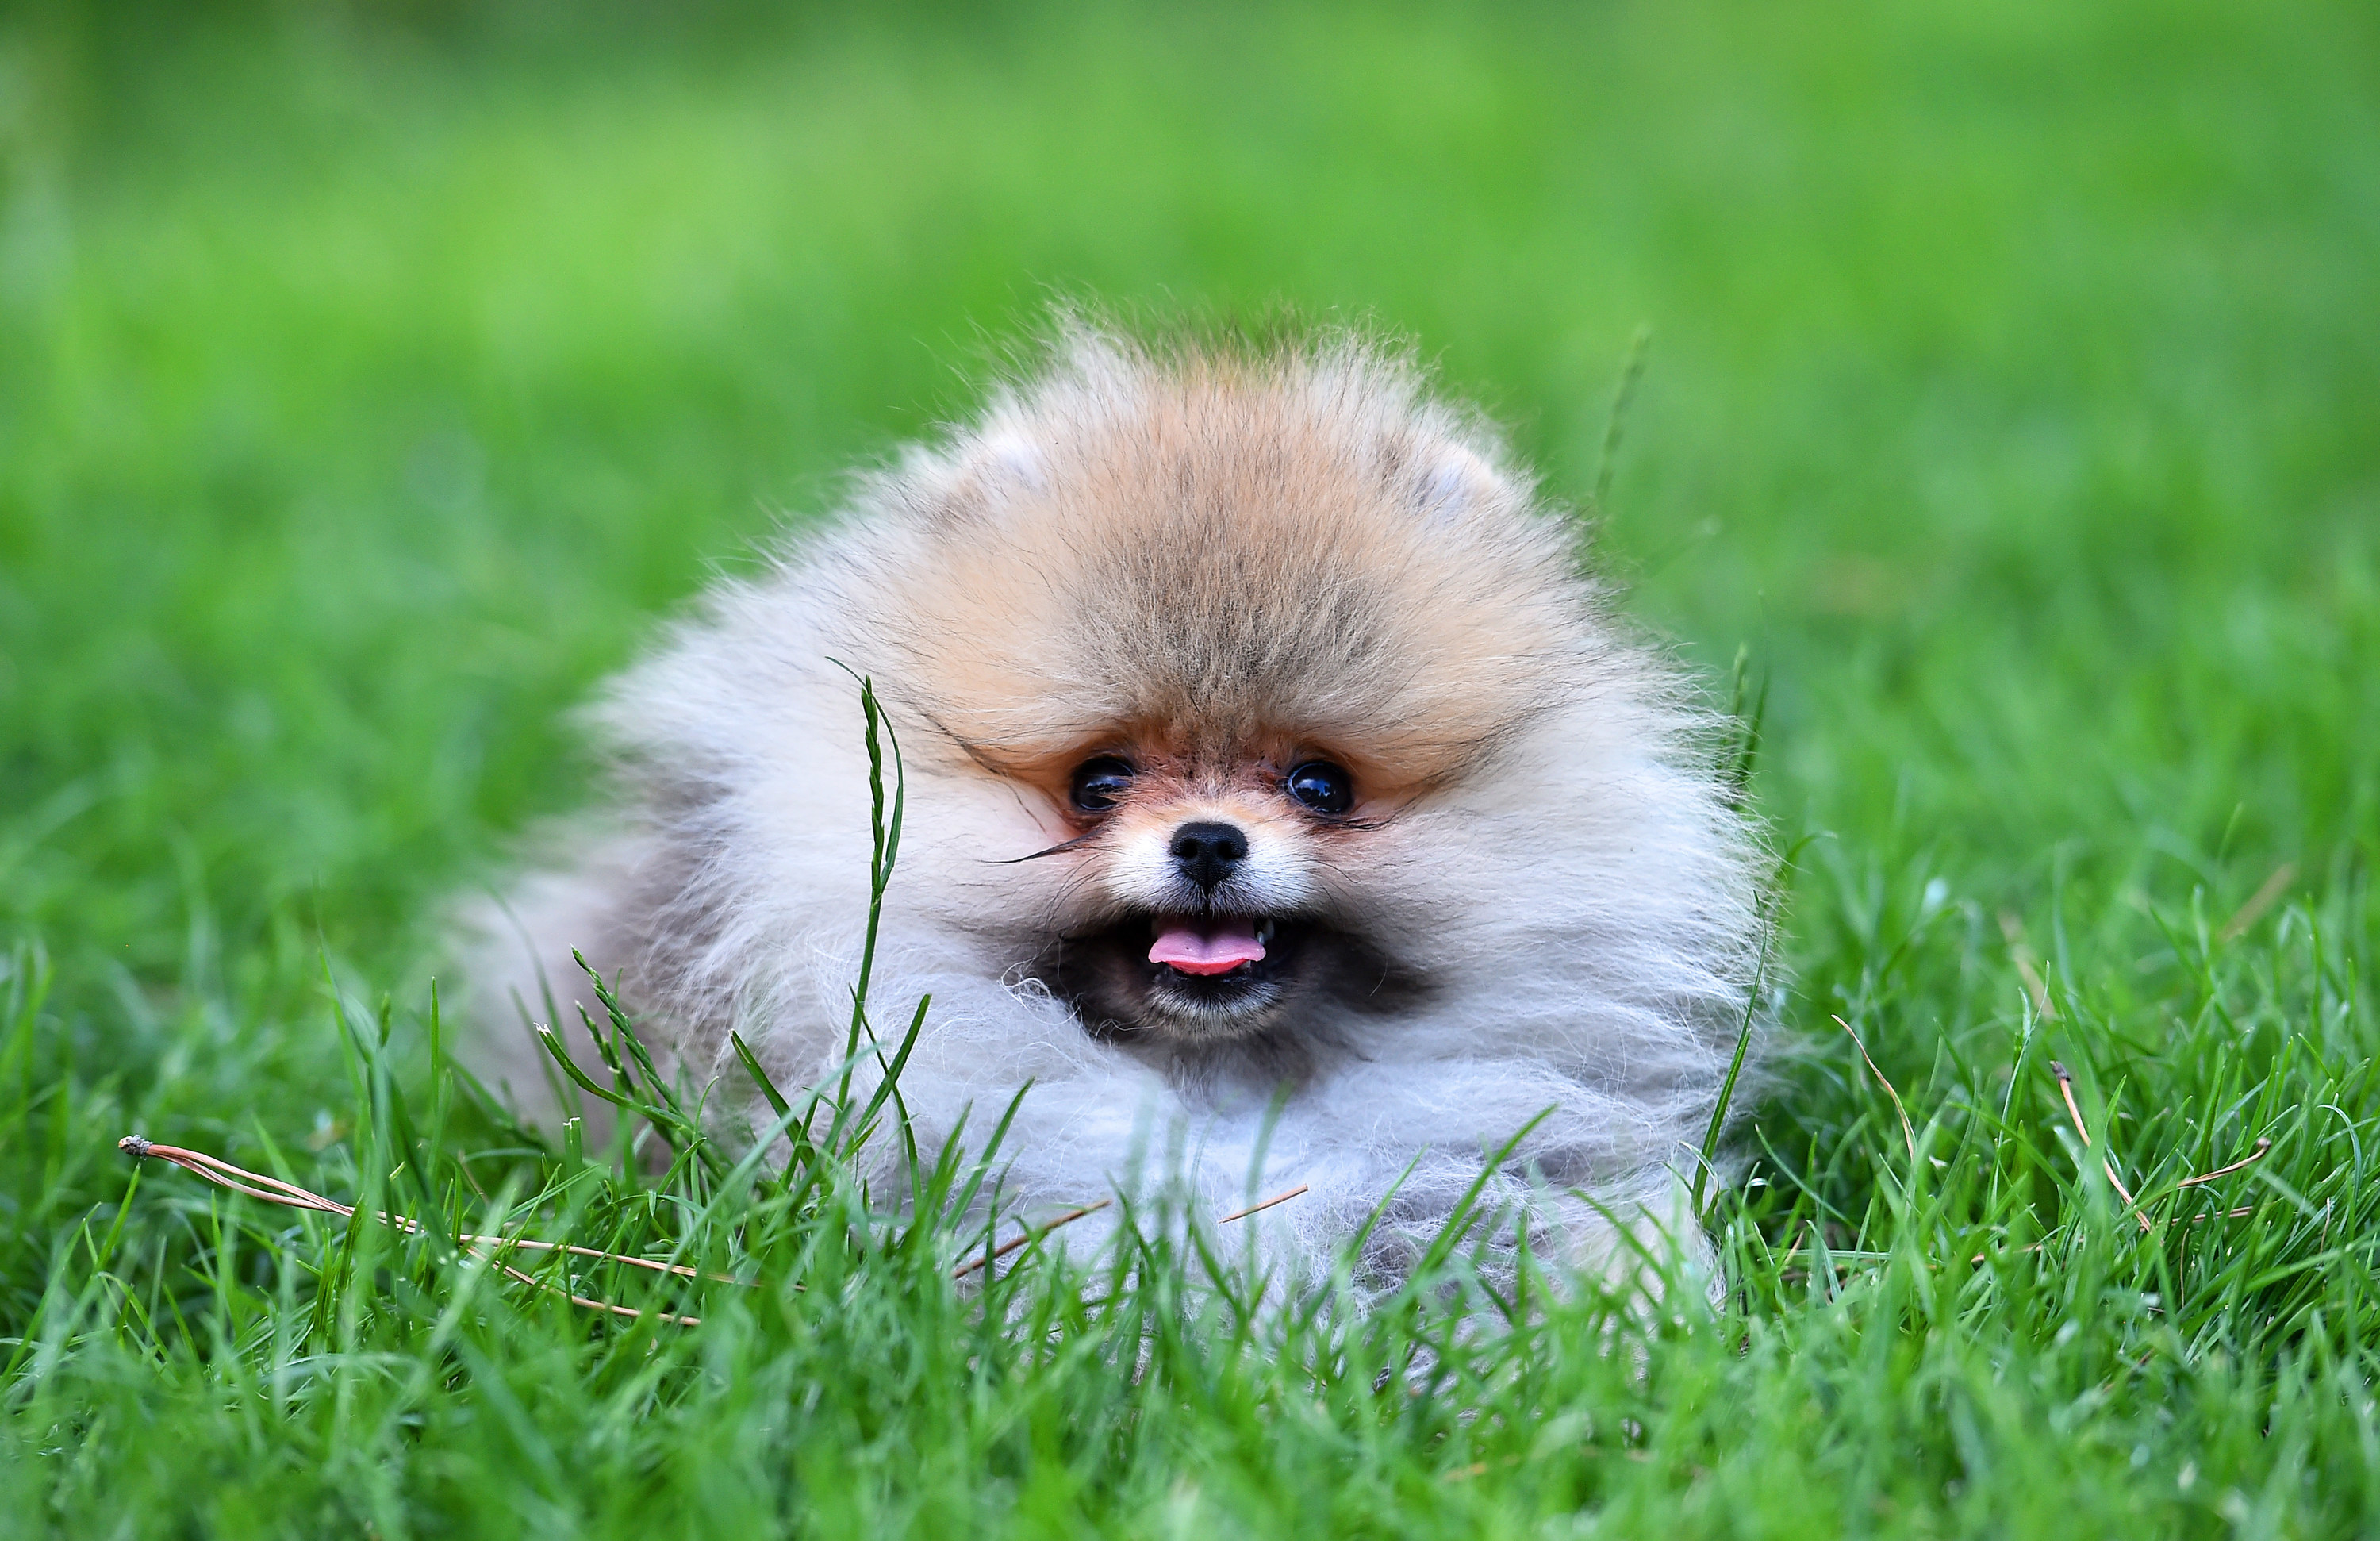 a smiling Pomeranian in a field